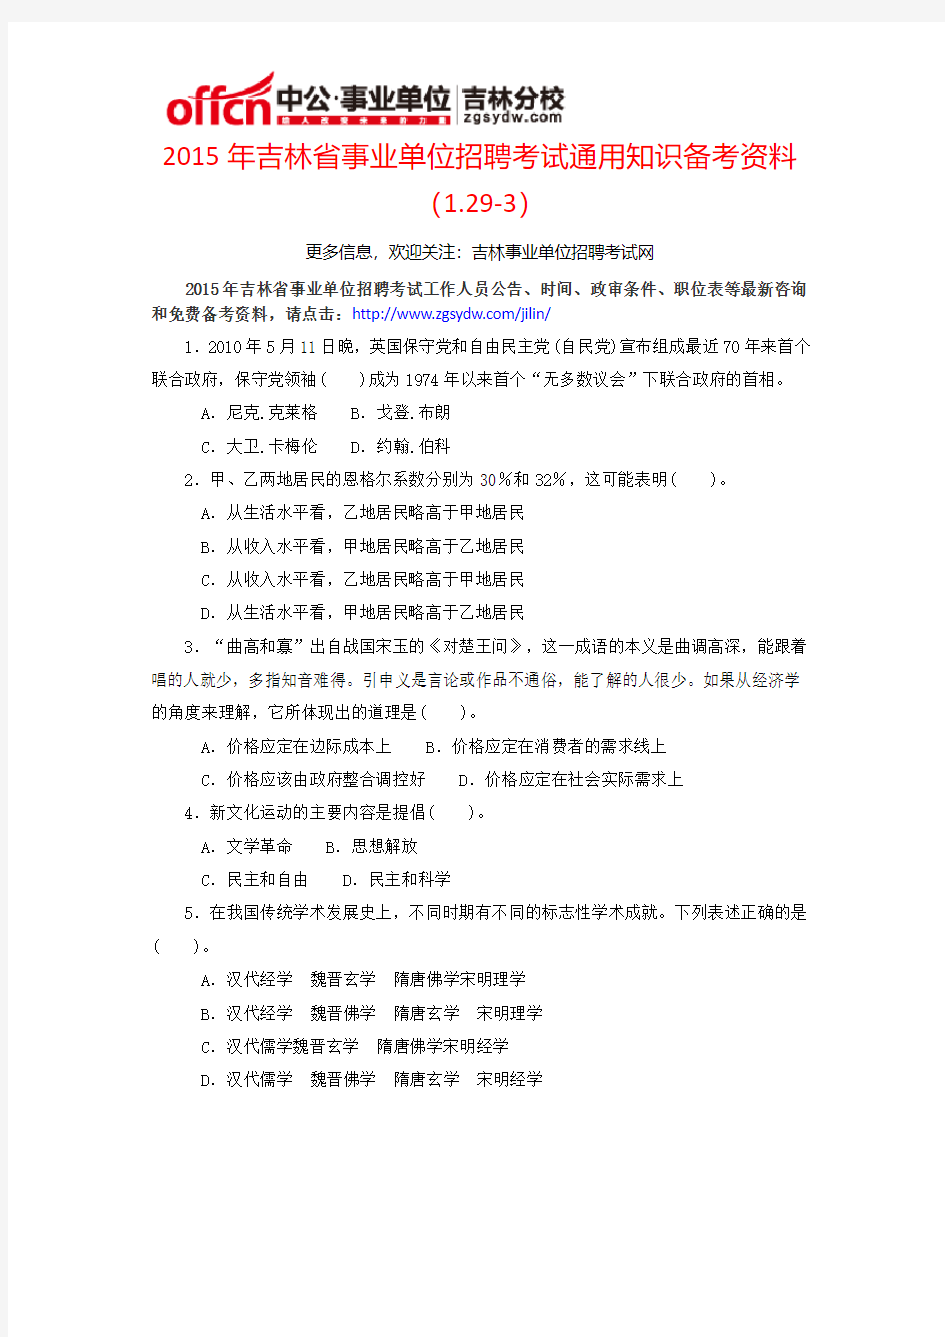 2015年吉林省事业单位招聘考试通用知识备考资料(1.29-3)